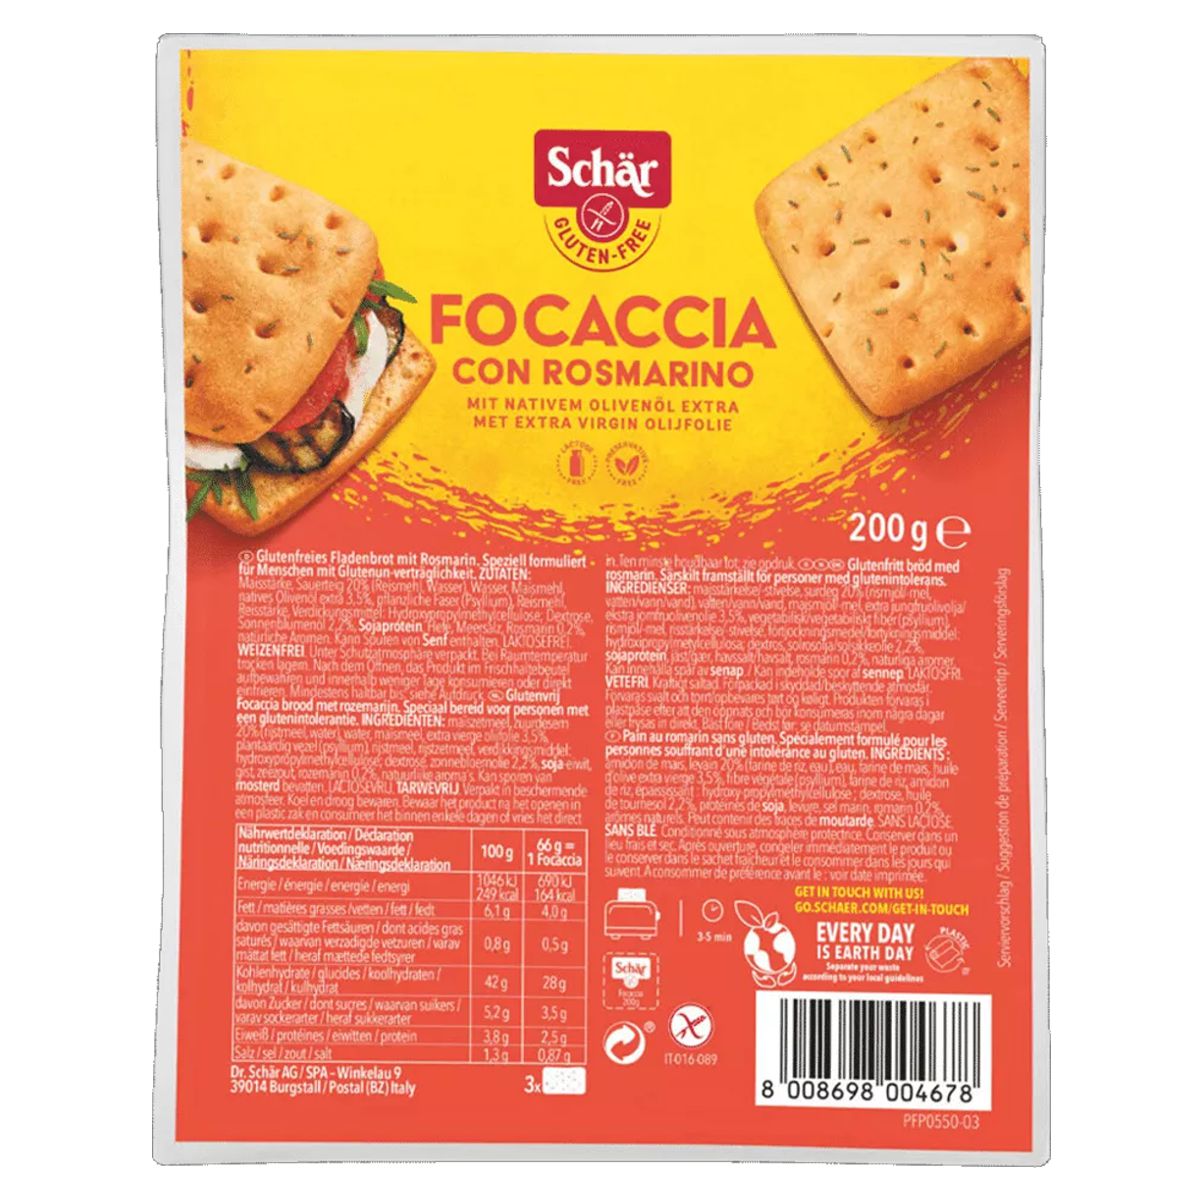 Schär_Focaccia_Rosmarin_glutenfrei_200g_kaufen